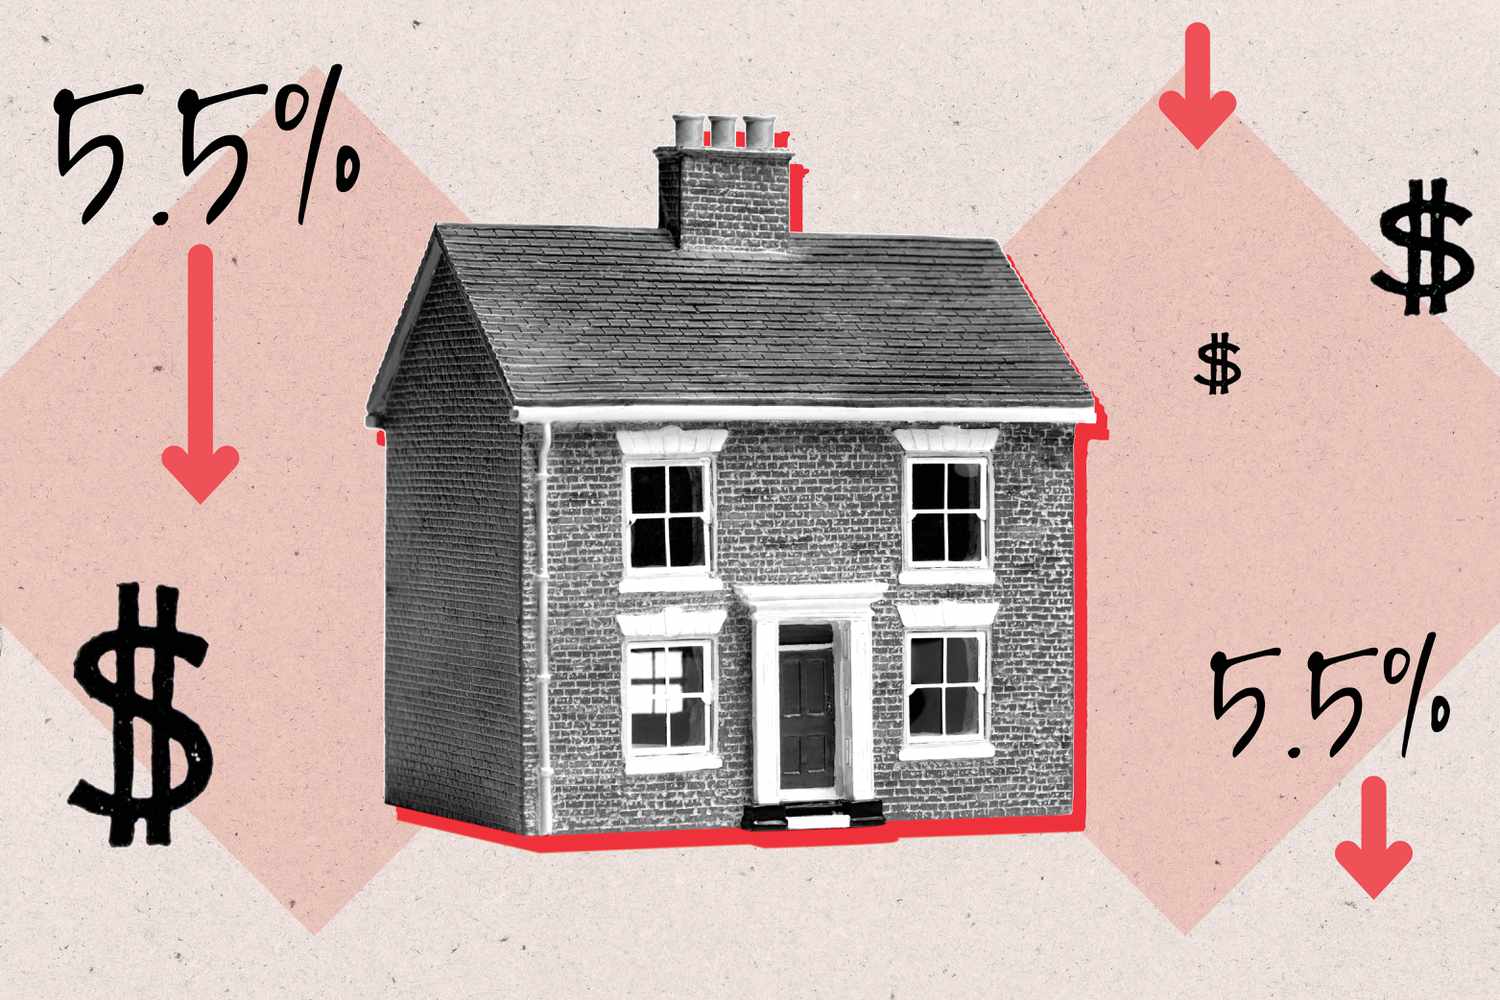 房子周围是向下的箭头、金钱标志和5.5%。＂class=